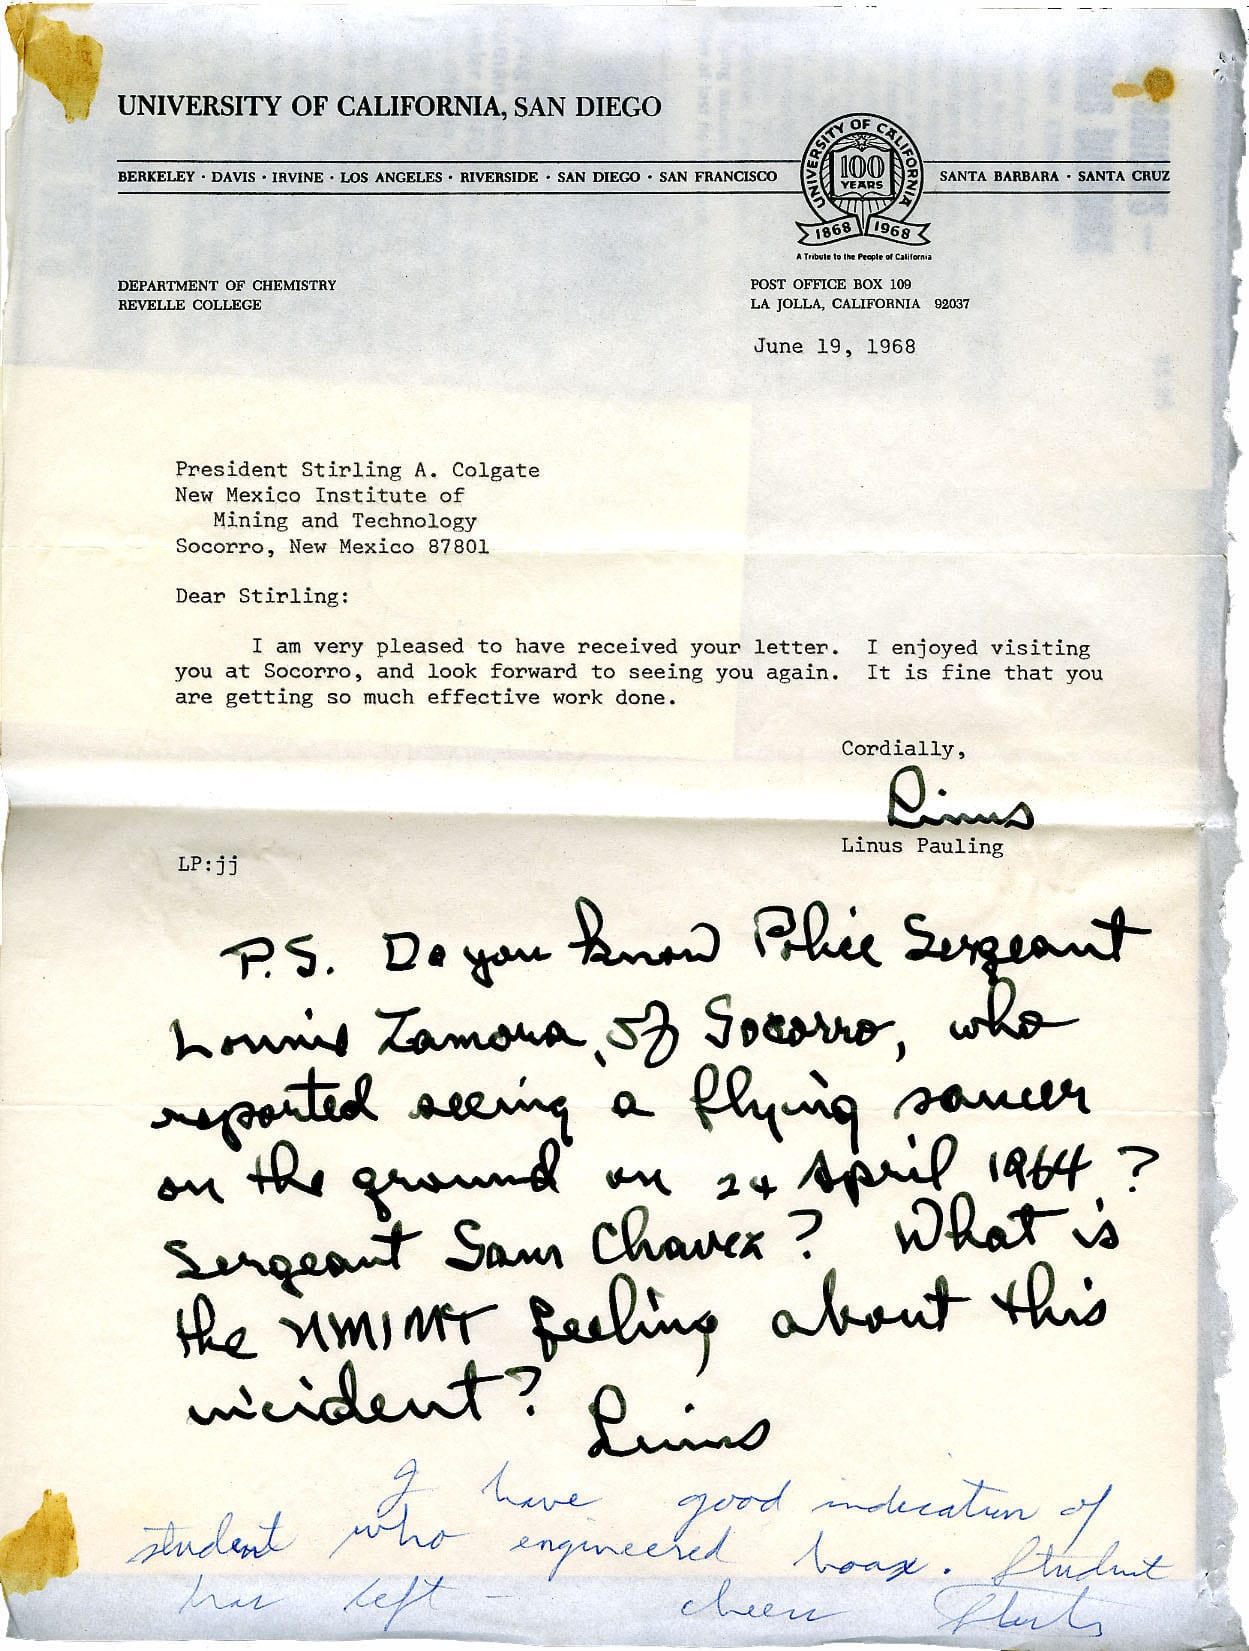 La carta descubierta entre la correspondencia del premio Nobel Linus Pauling sobre el caso ovni de Socorro.